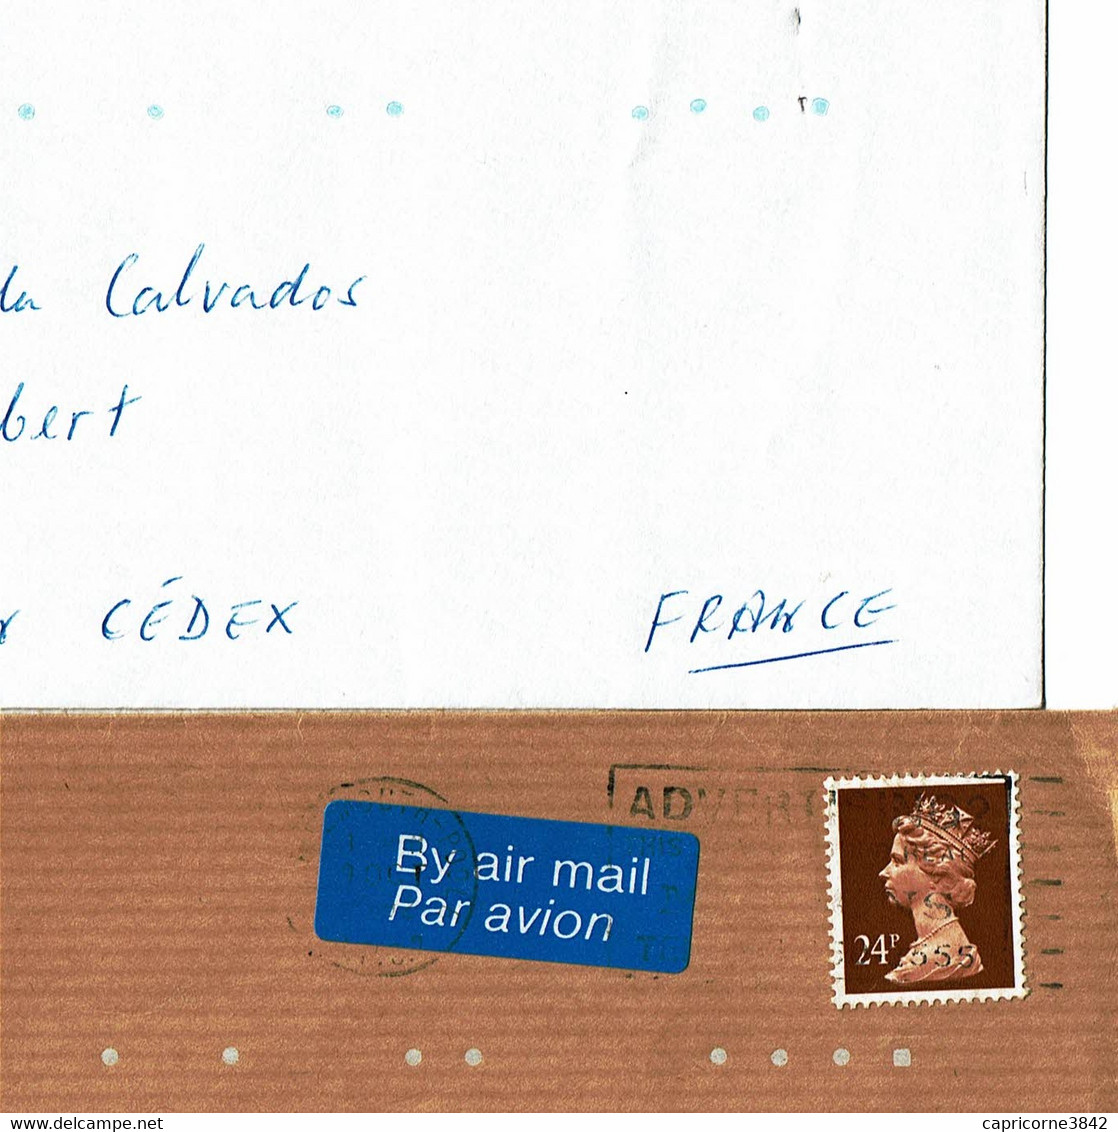 2 Lettres Pour La France - Tp Elysabeth II - Indexation Des Lettres Par Points - Storia Postale